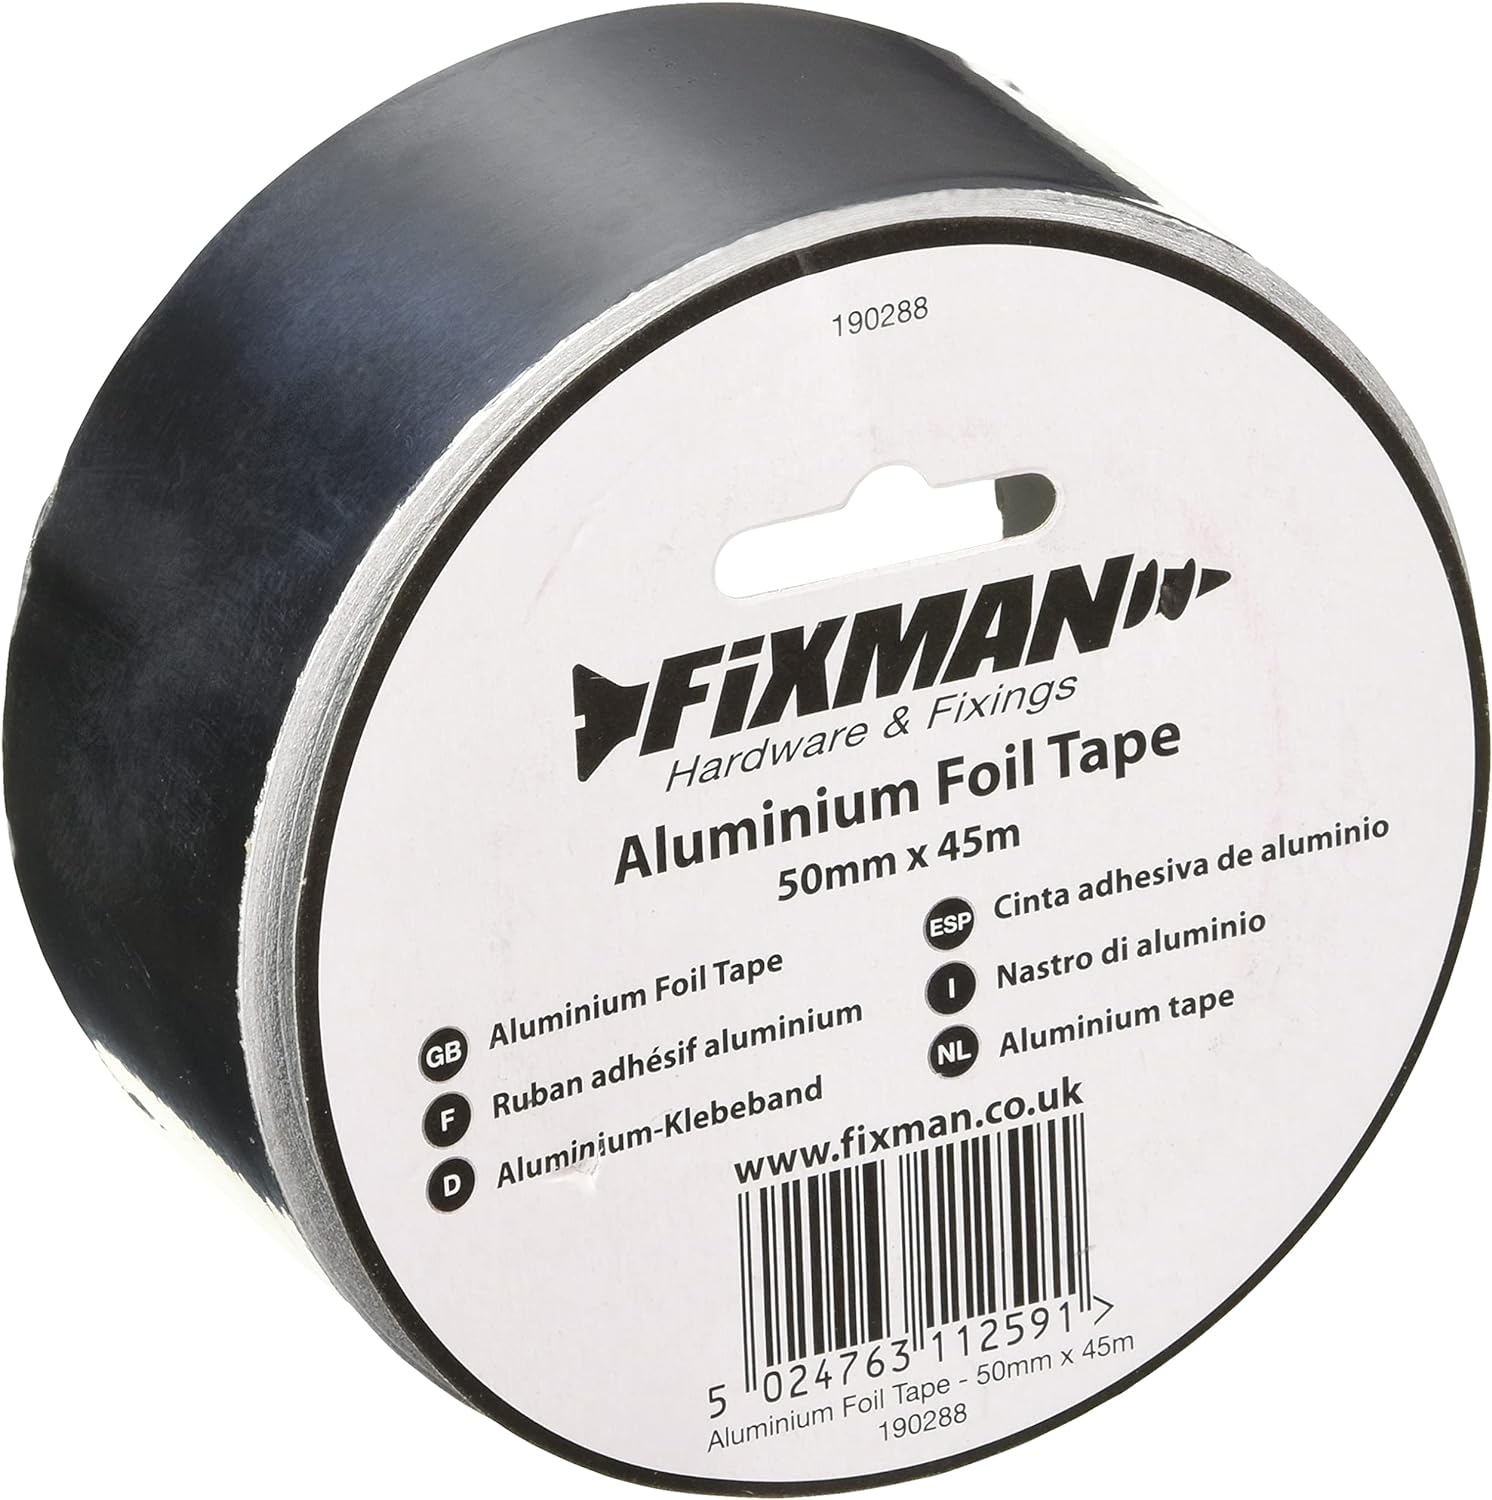 Fixman Aluminium Foil Tape 